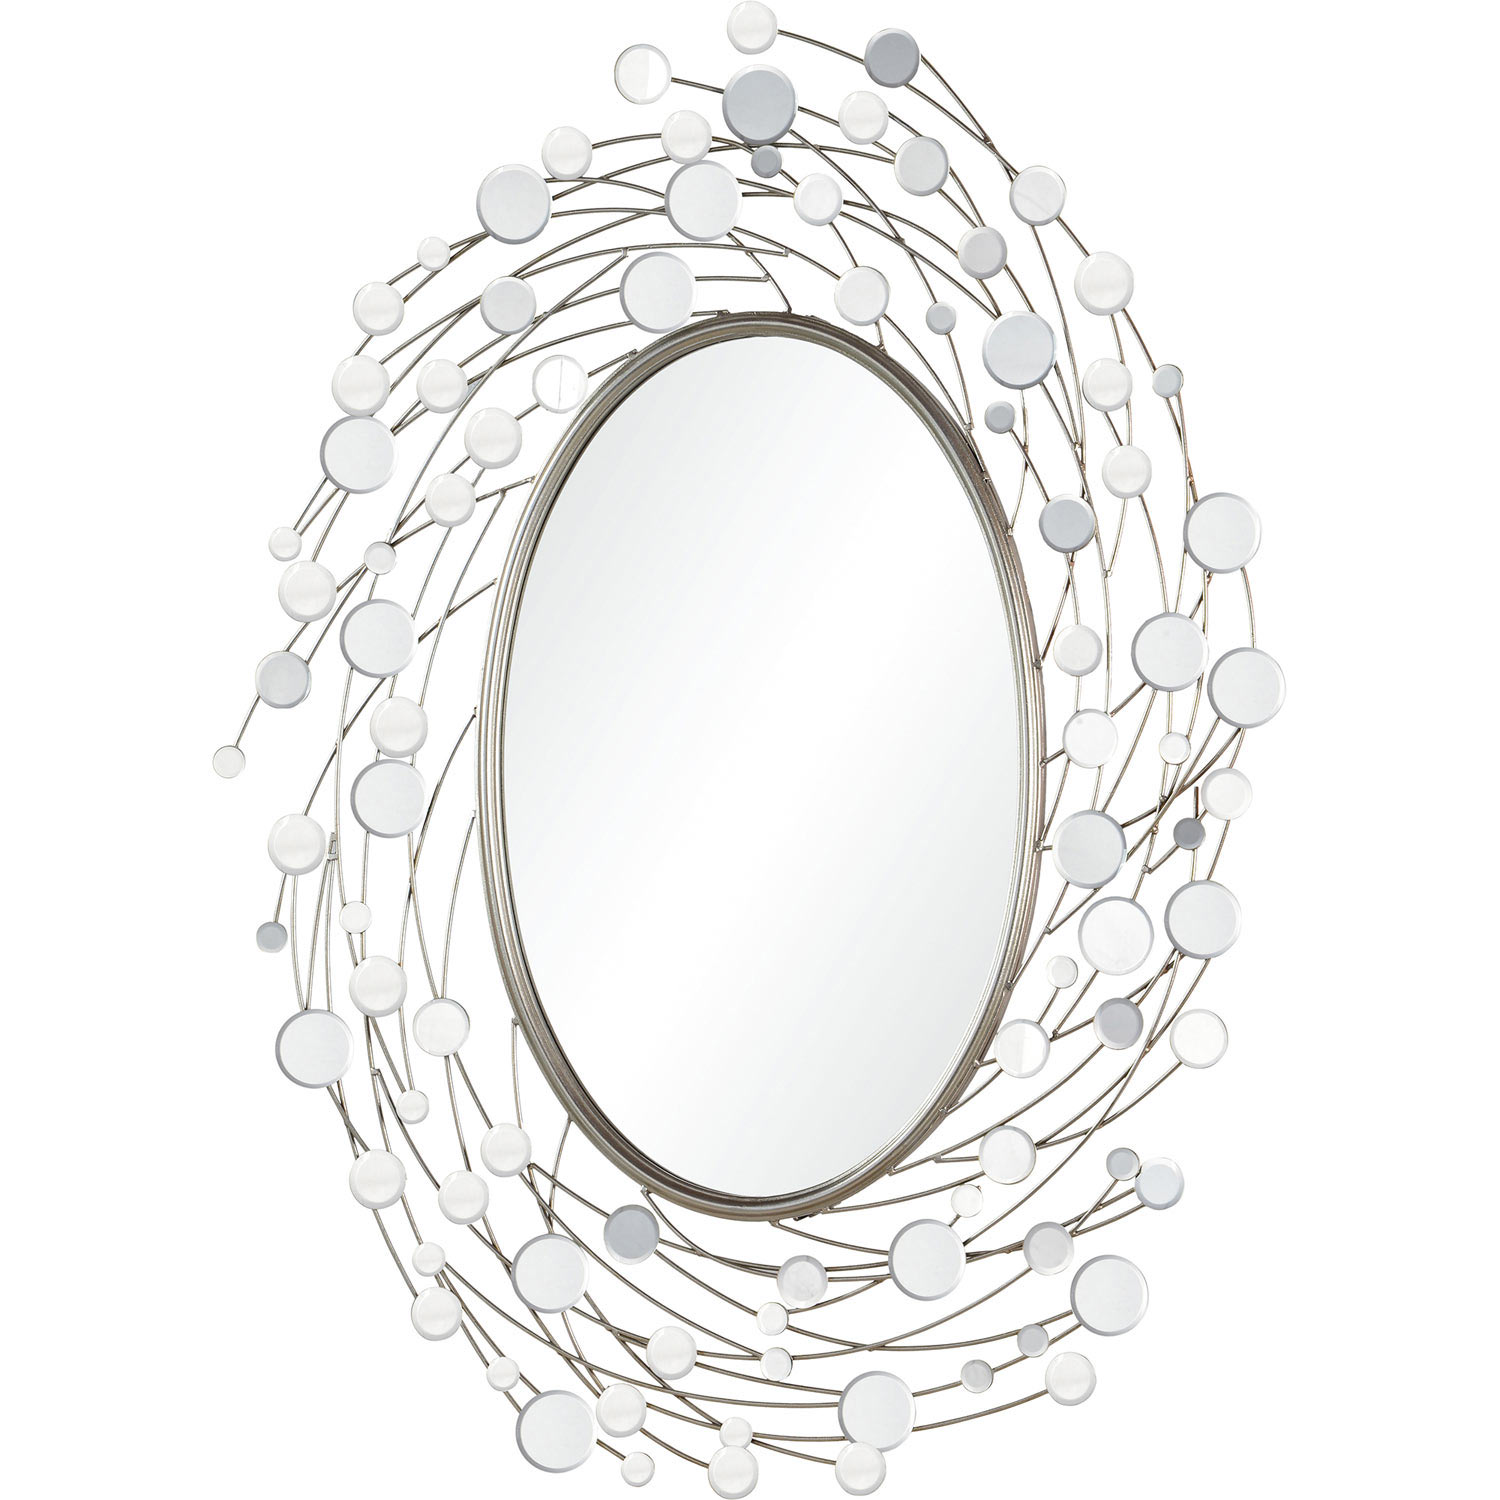 Ren-Wil Sirit Irregular Mirror - Silver Leaf